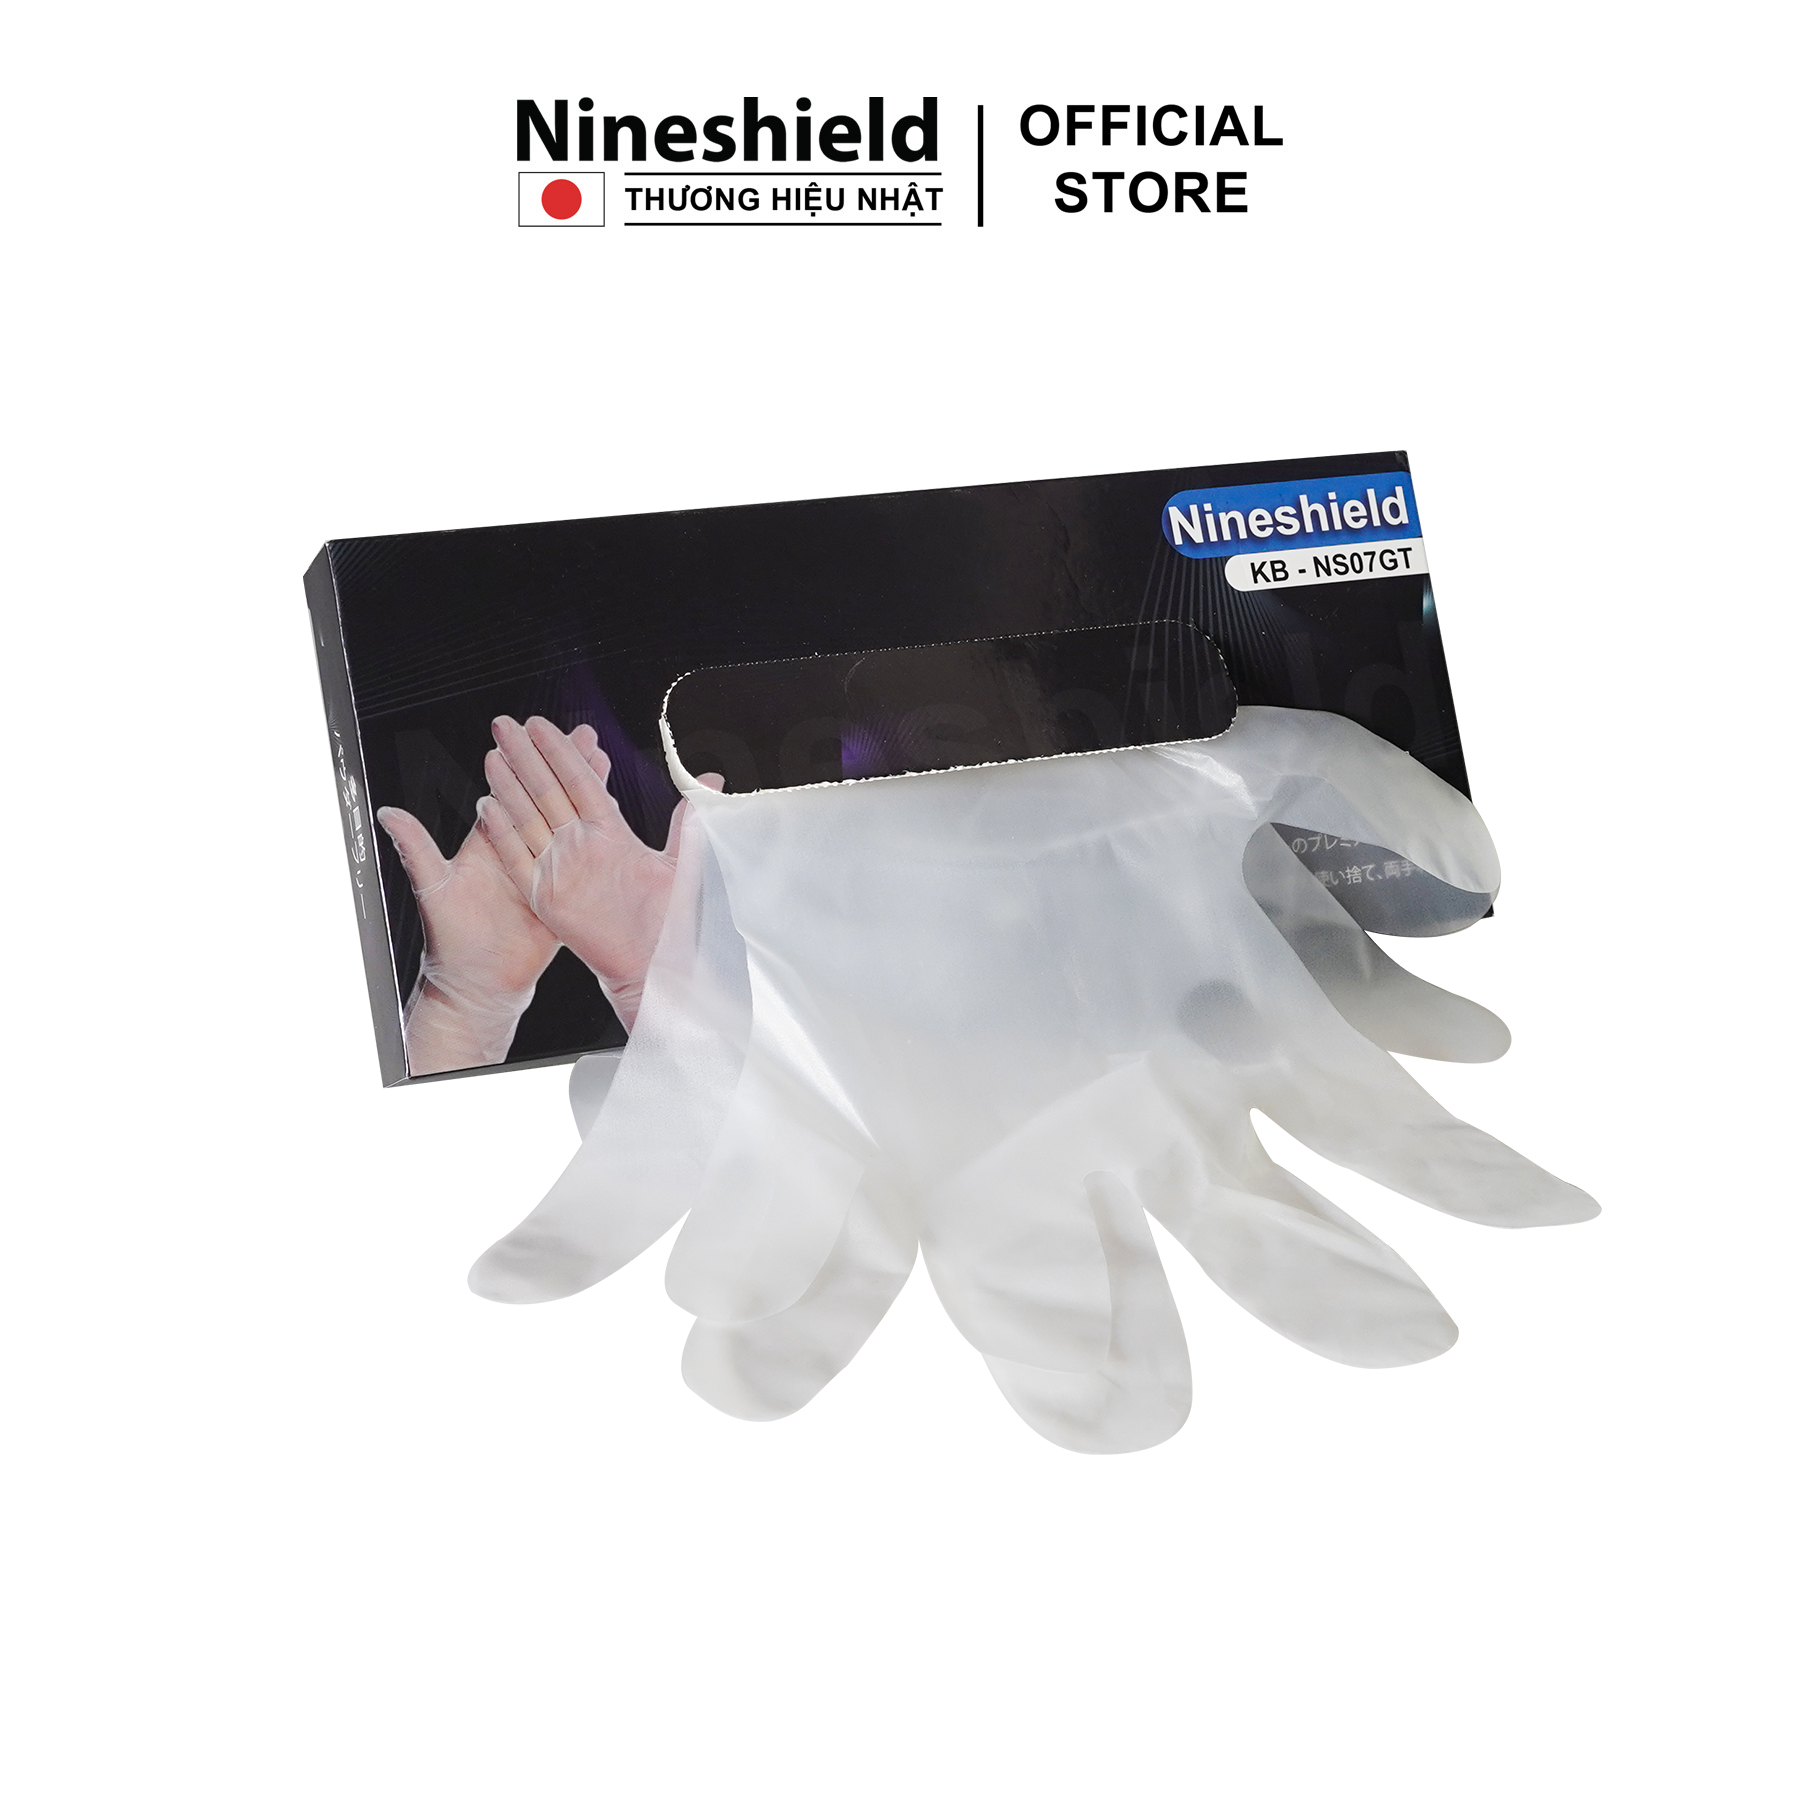 Hộp 100 găng tay đa năng chính hãng Nineshield KB NS07GT